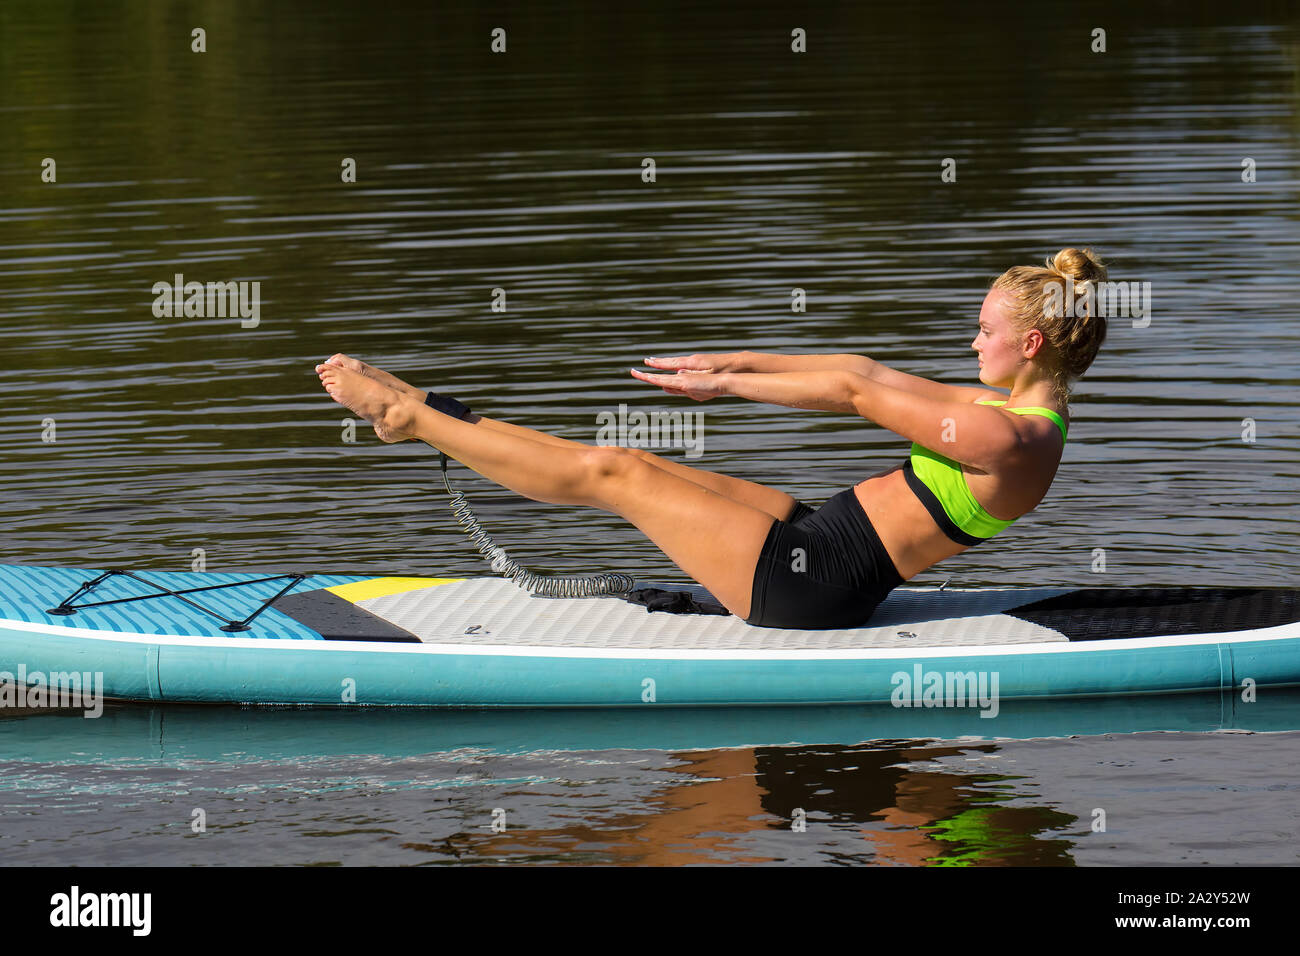 Junge Frau in Yoga Haltung auf dem Zusatzsteuerventil-armaturenbrett auf der Wasseroberfläche Stockfoto